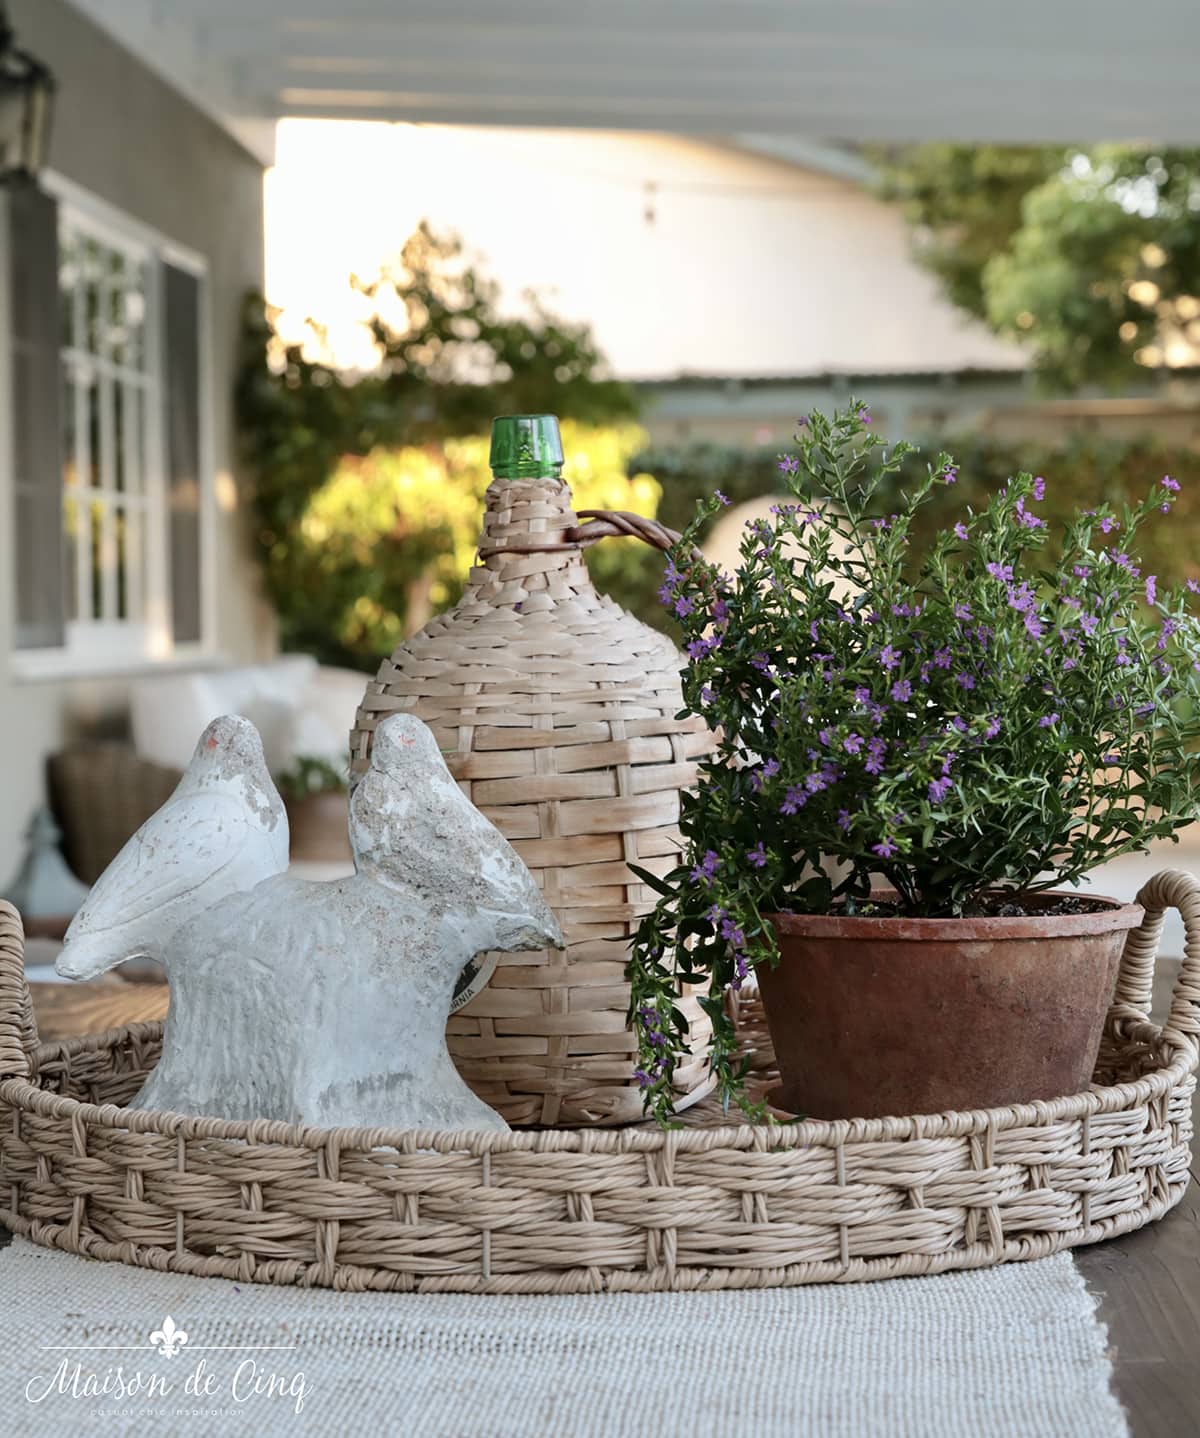 gorgeous patio decor ideas vintage garden statue flowering plants in pots 